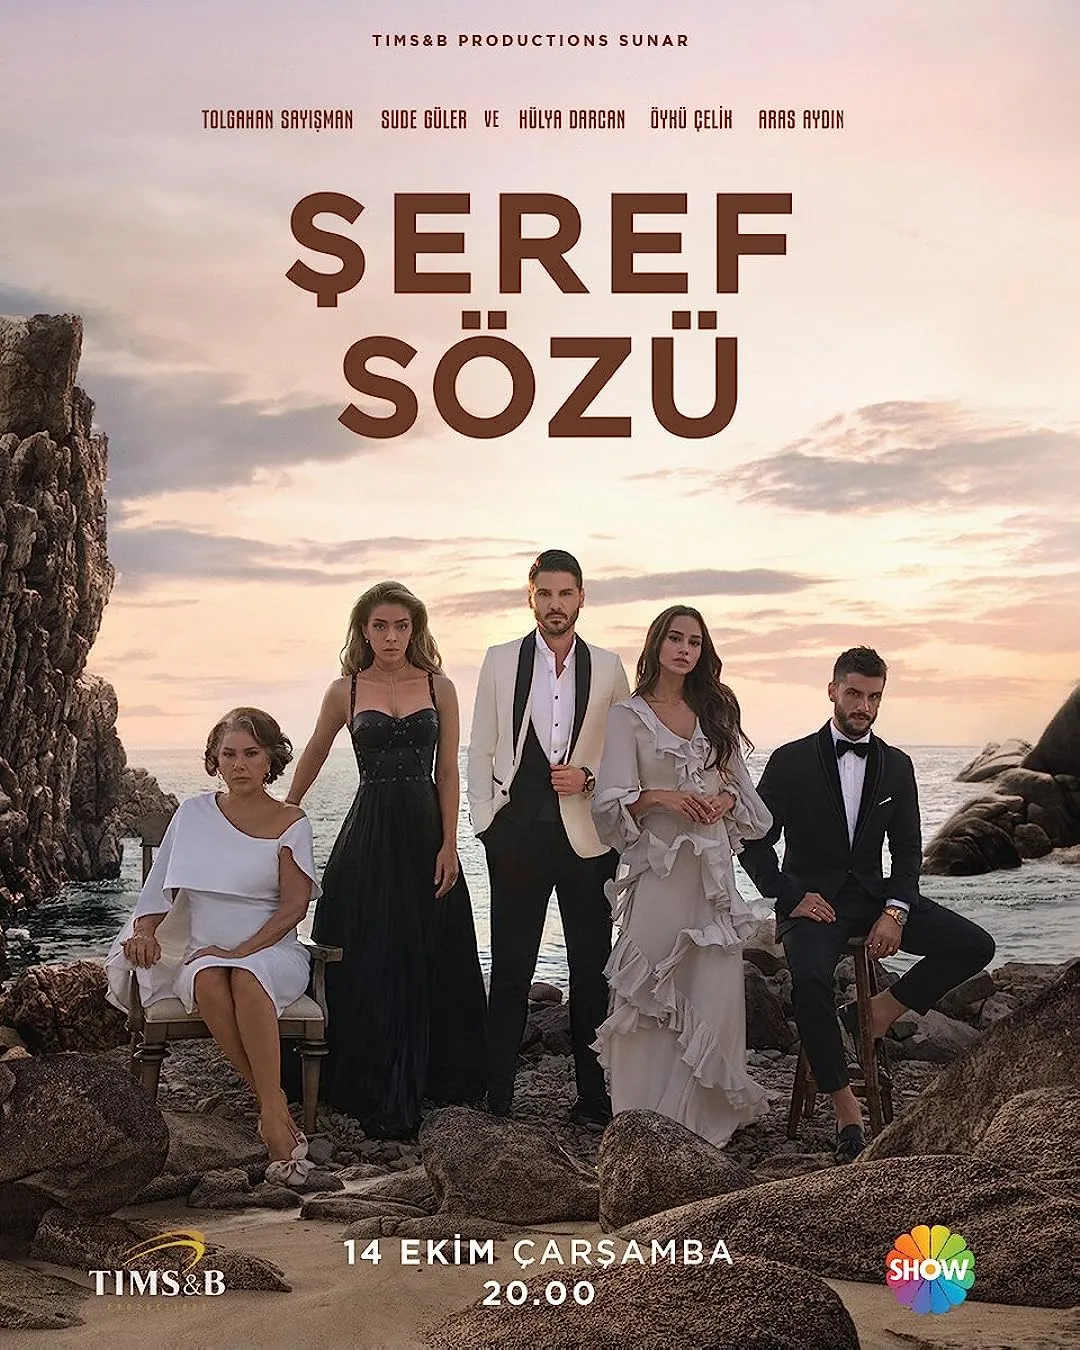 Seref Sozu | Cuvant de onoare online subtitrat in romana